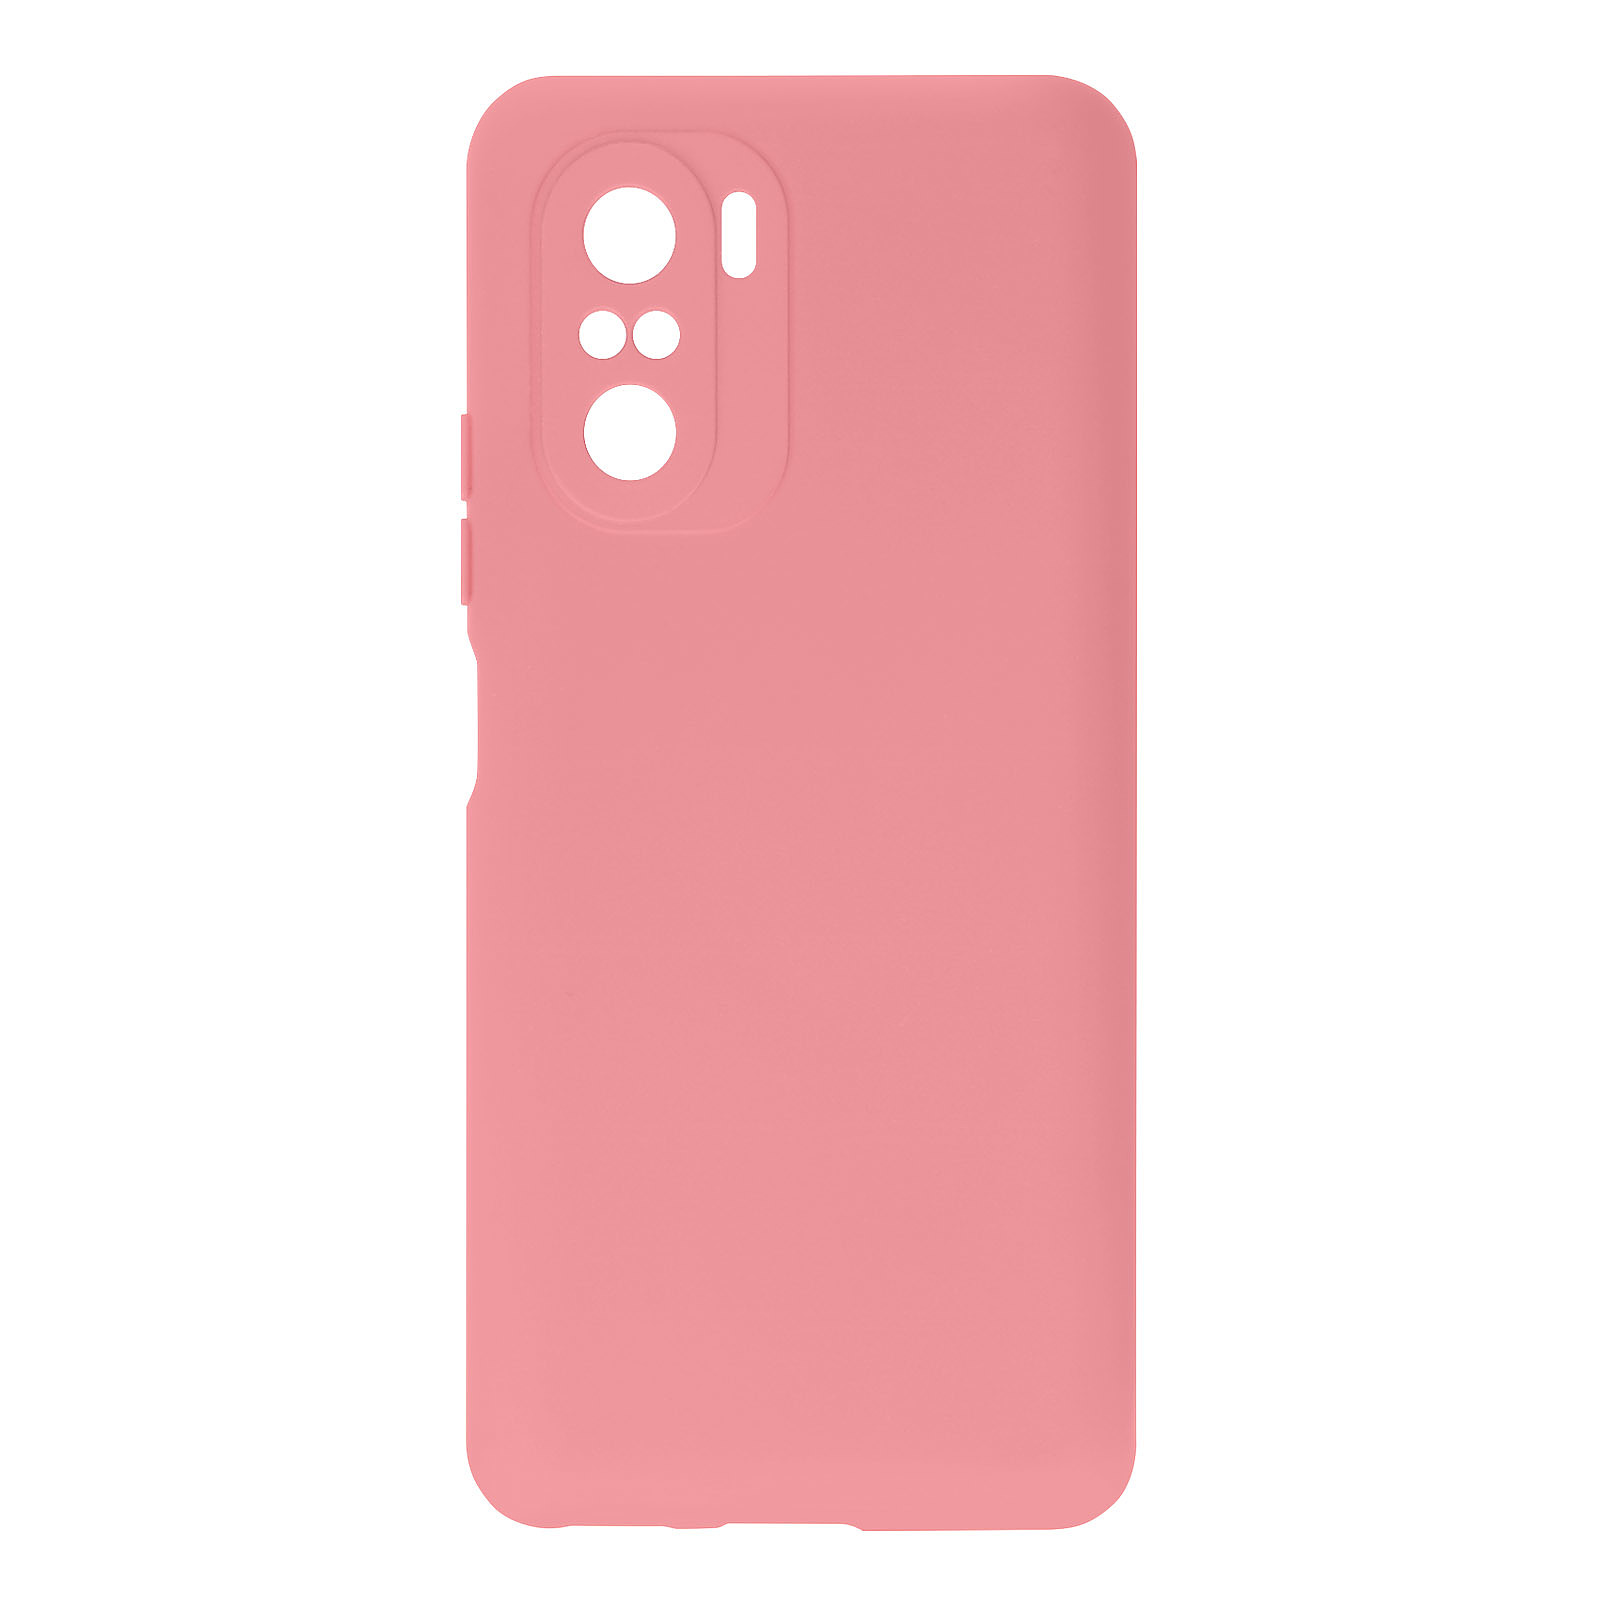 Avizar Coque pour Xiaomi Poco F3 et Mi 11iSilicone Semi-rigide Finition Soft Touch Fine Rose pale - Coque telephone Avizar